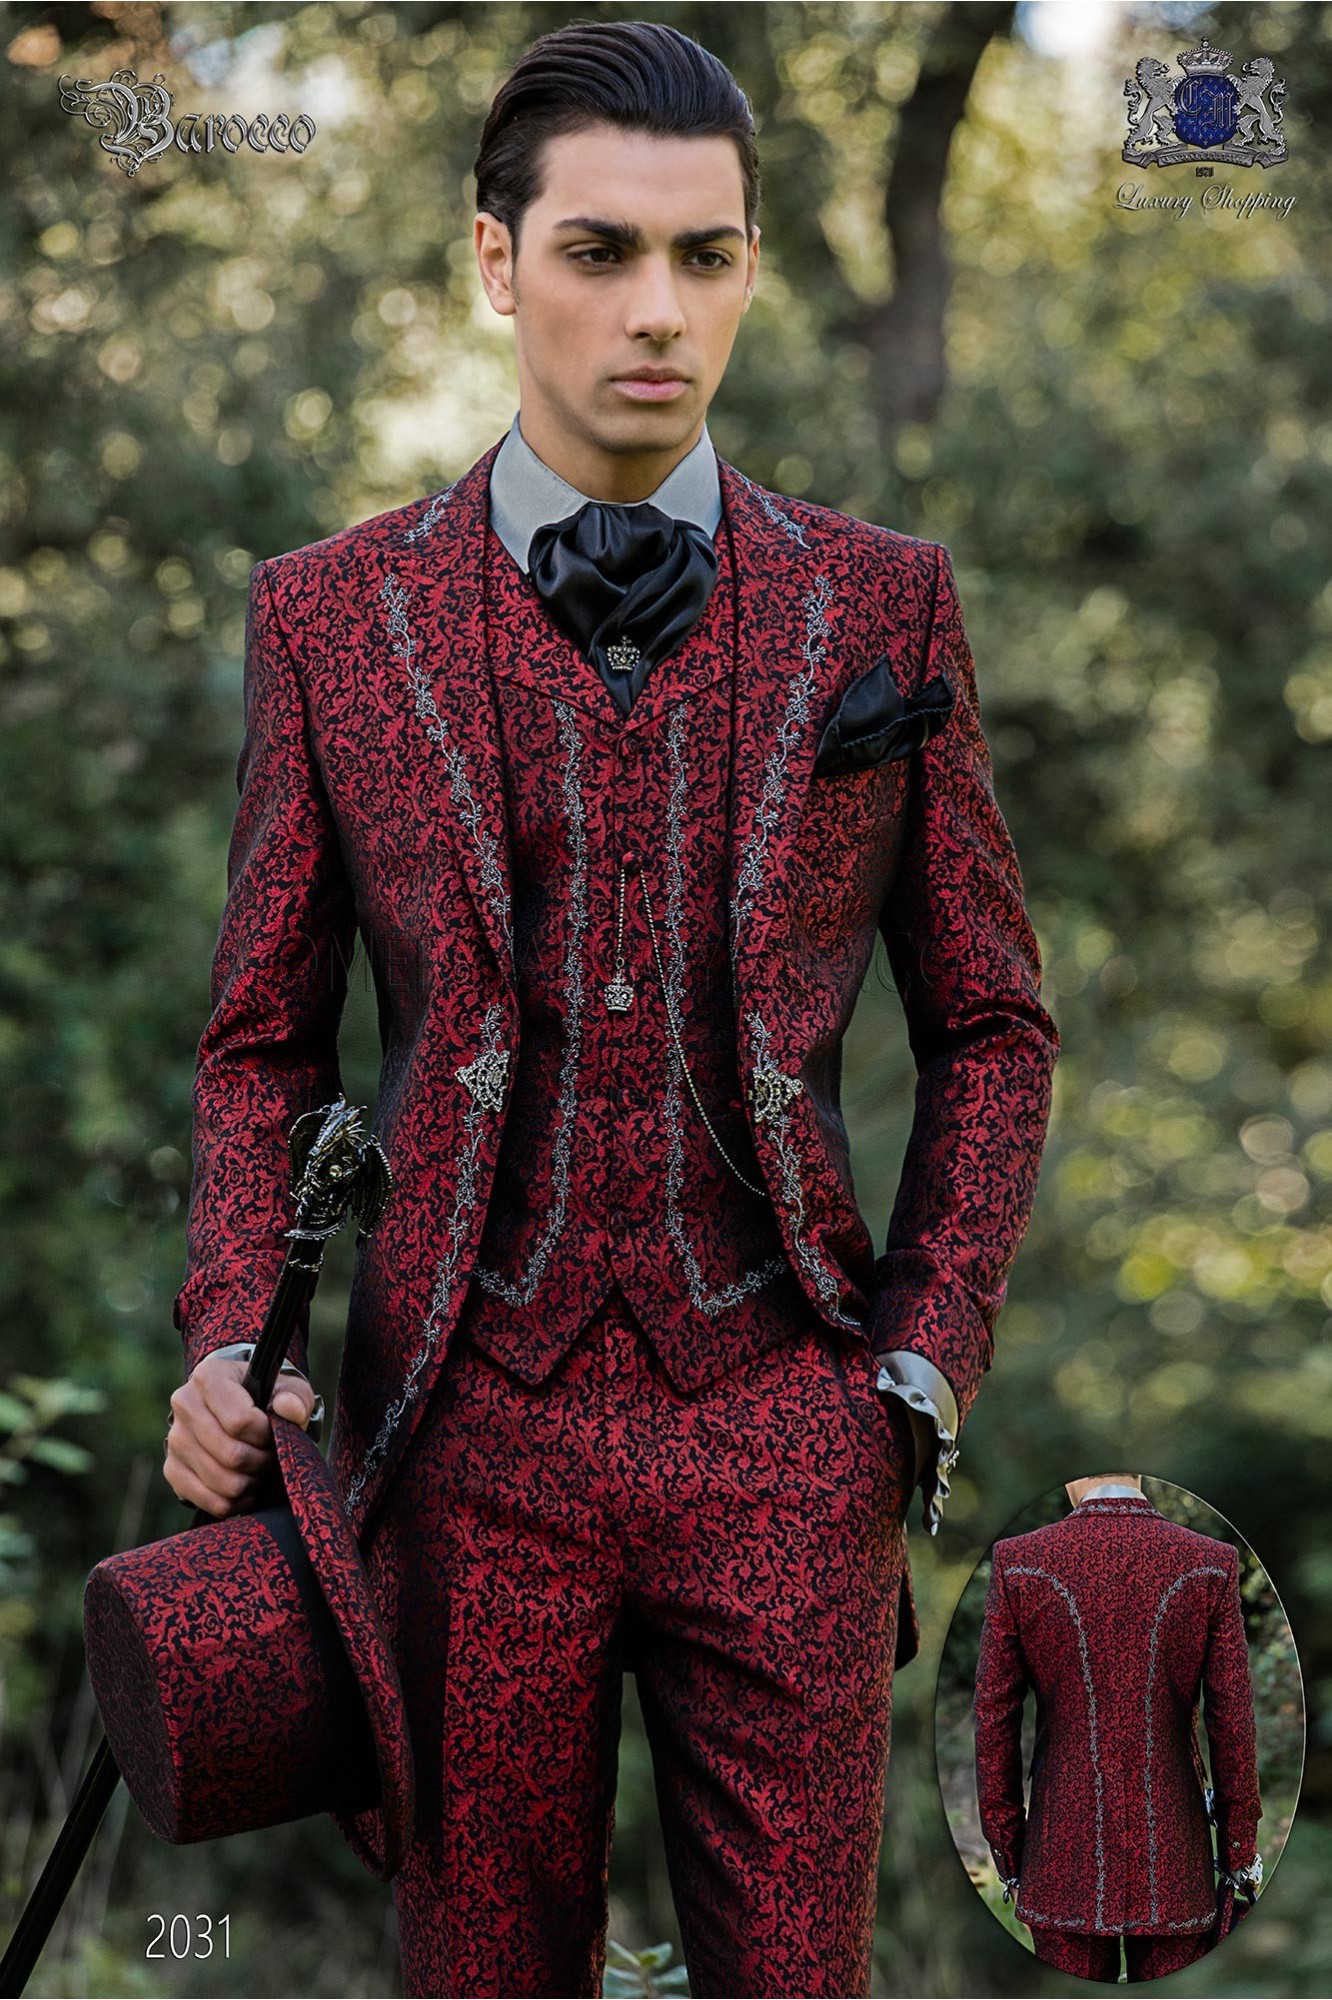 levita de época en tejido jacquard rojo con bordados plateados y broche de cristal modelo: 2031 Mario Moyano colección Barroco